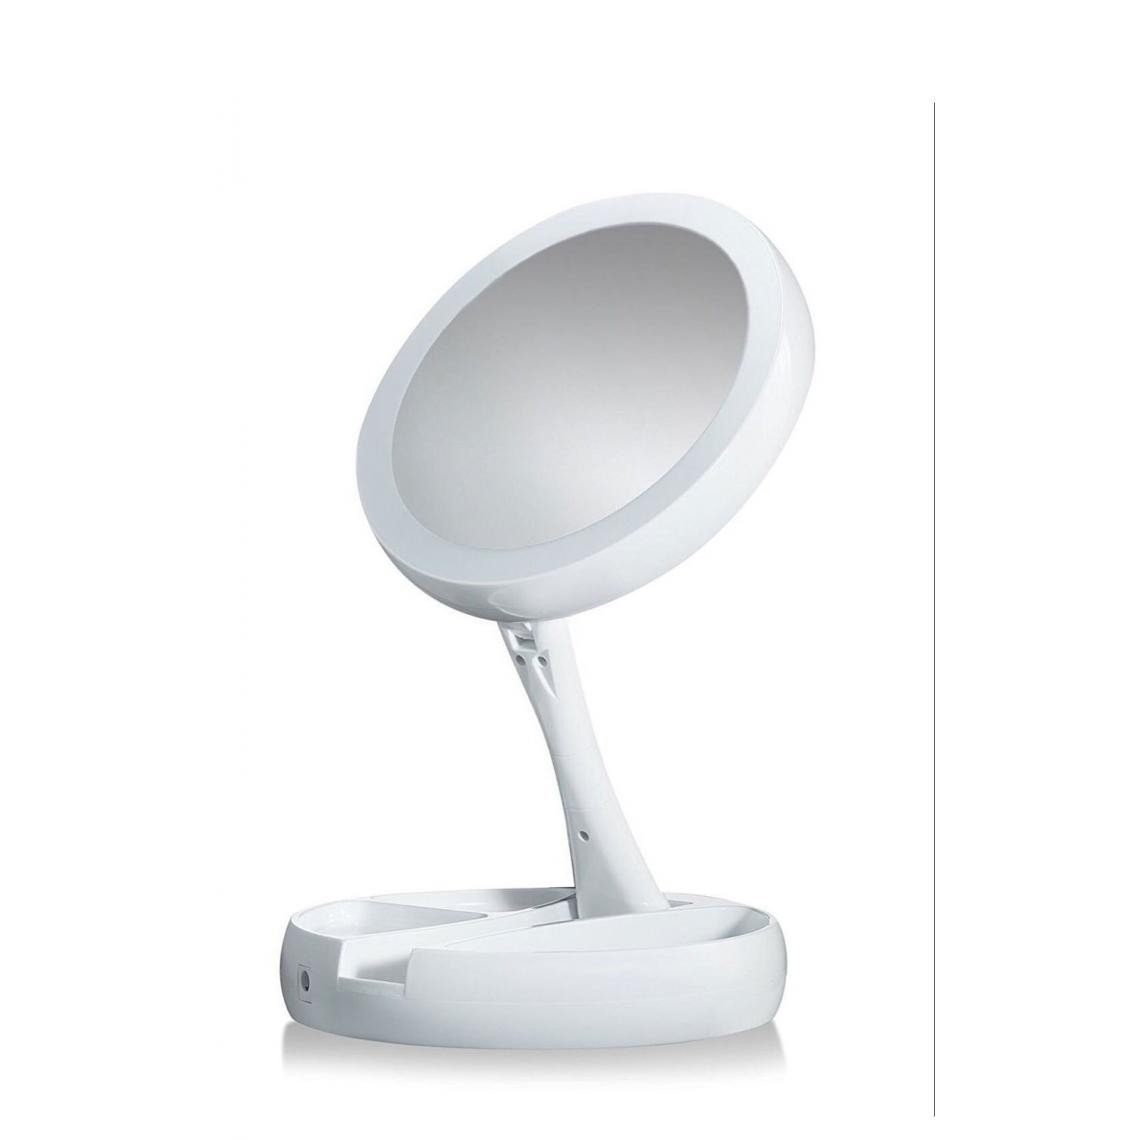 Universal - Miroir de toilette portable pliable éclairage LED miroir de toilette professionnel miroir de toilette réglable 270 degrés rotation | miroir de bain(blanche) - Miroir de salle de bain